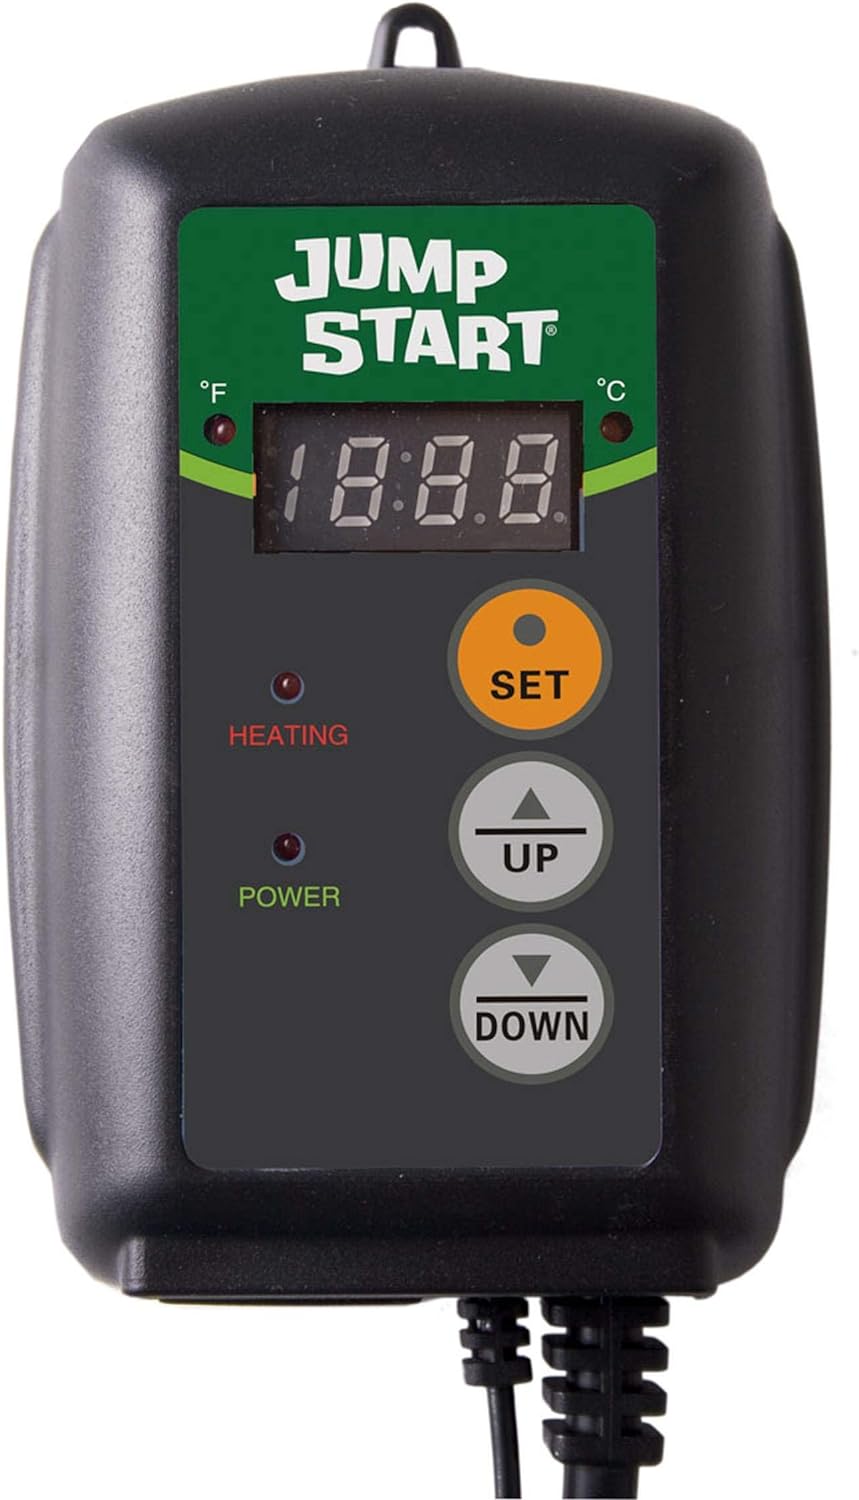 Jump Start MTPRTC Heat Mat Controller Review